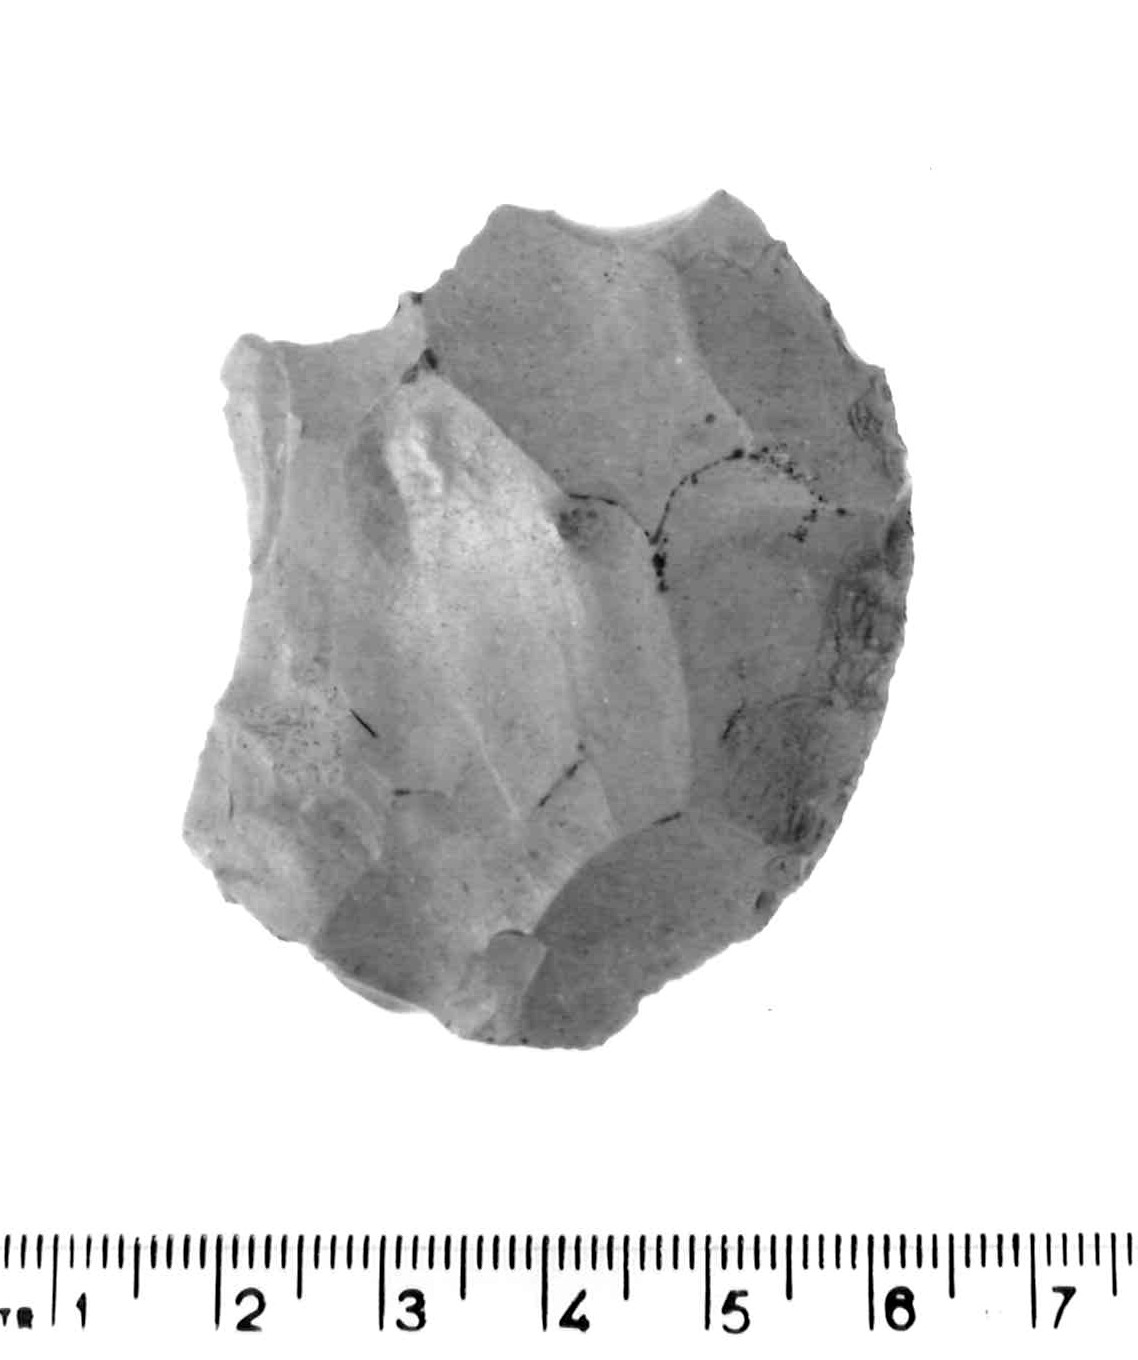 raschiatoio marginale - musteriano (paleolitico medio)